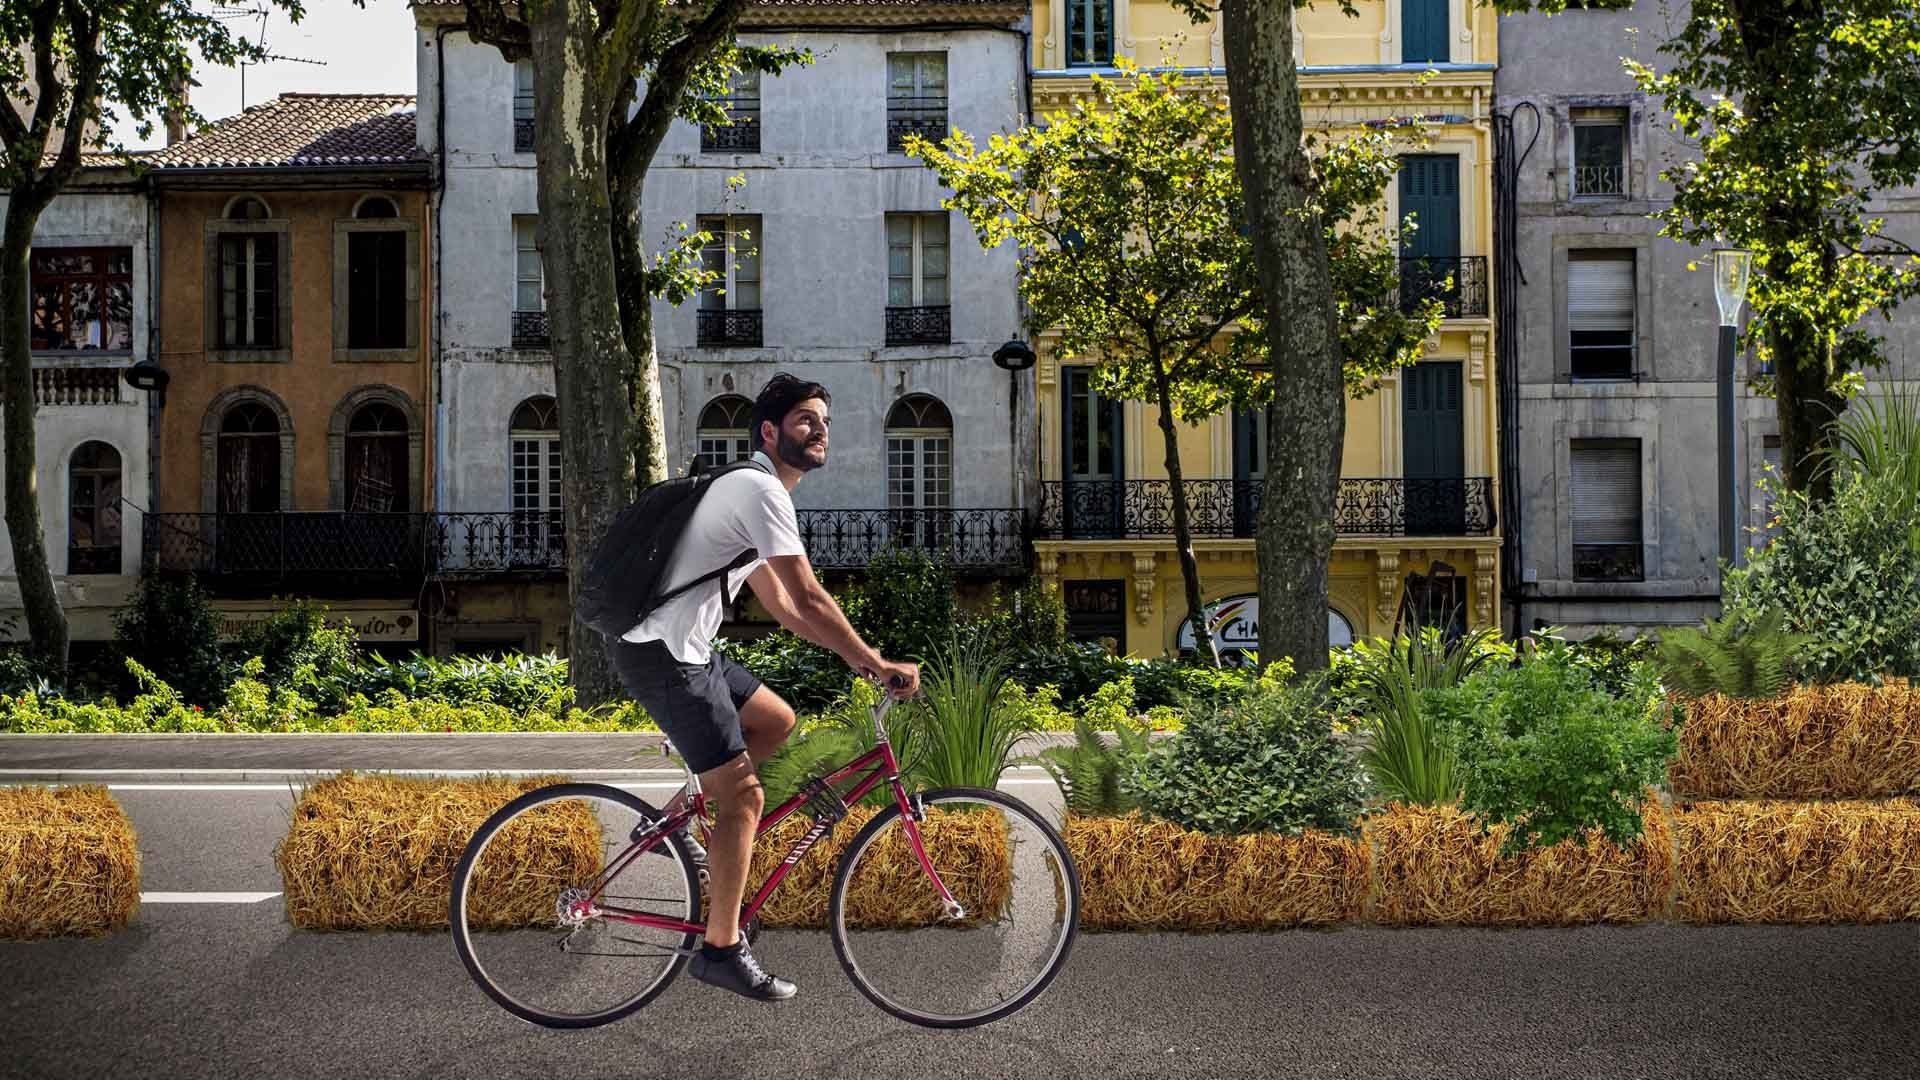 Le concept PAILLEline consiste à créer en milieu urbain des pistes cyclables temporaires délimitées par des bottes de paille.